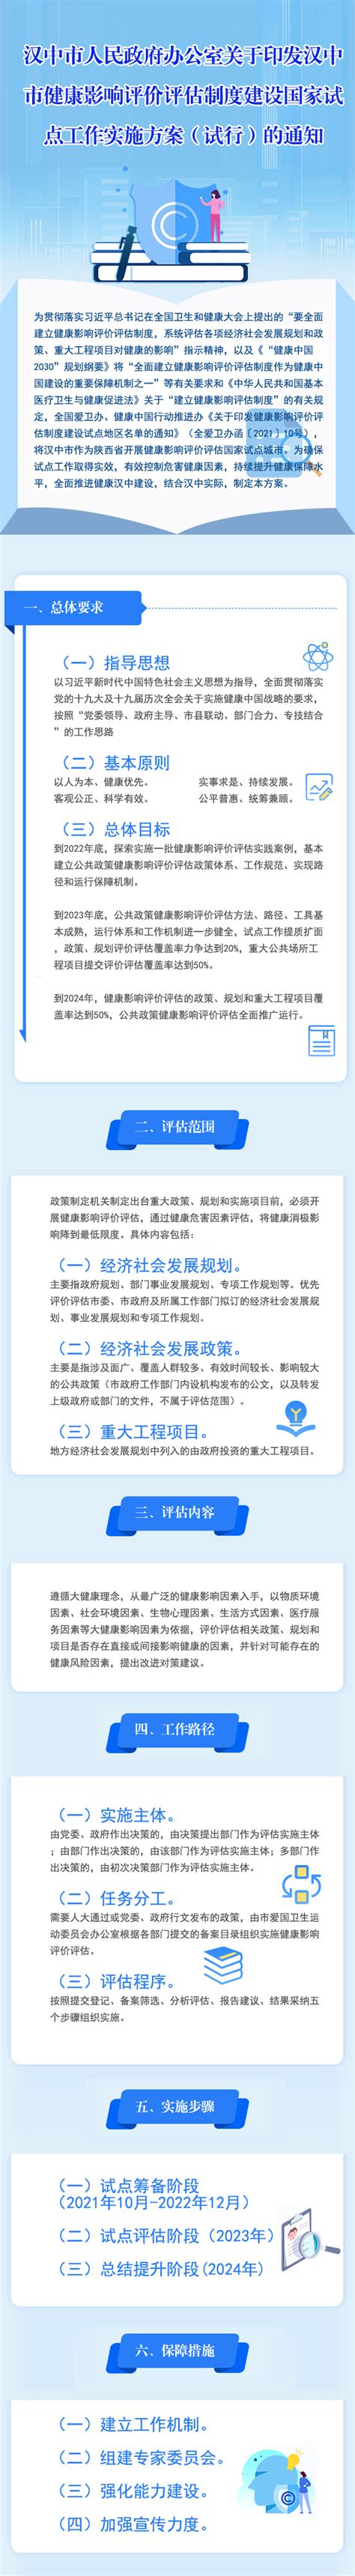 陕西省公路综合业务平台将在汉中进行试点建设_汉中市公路局